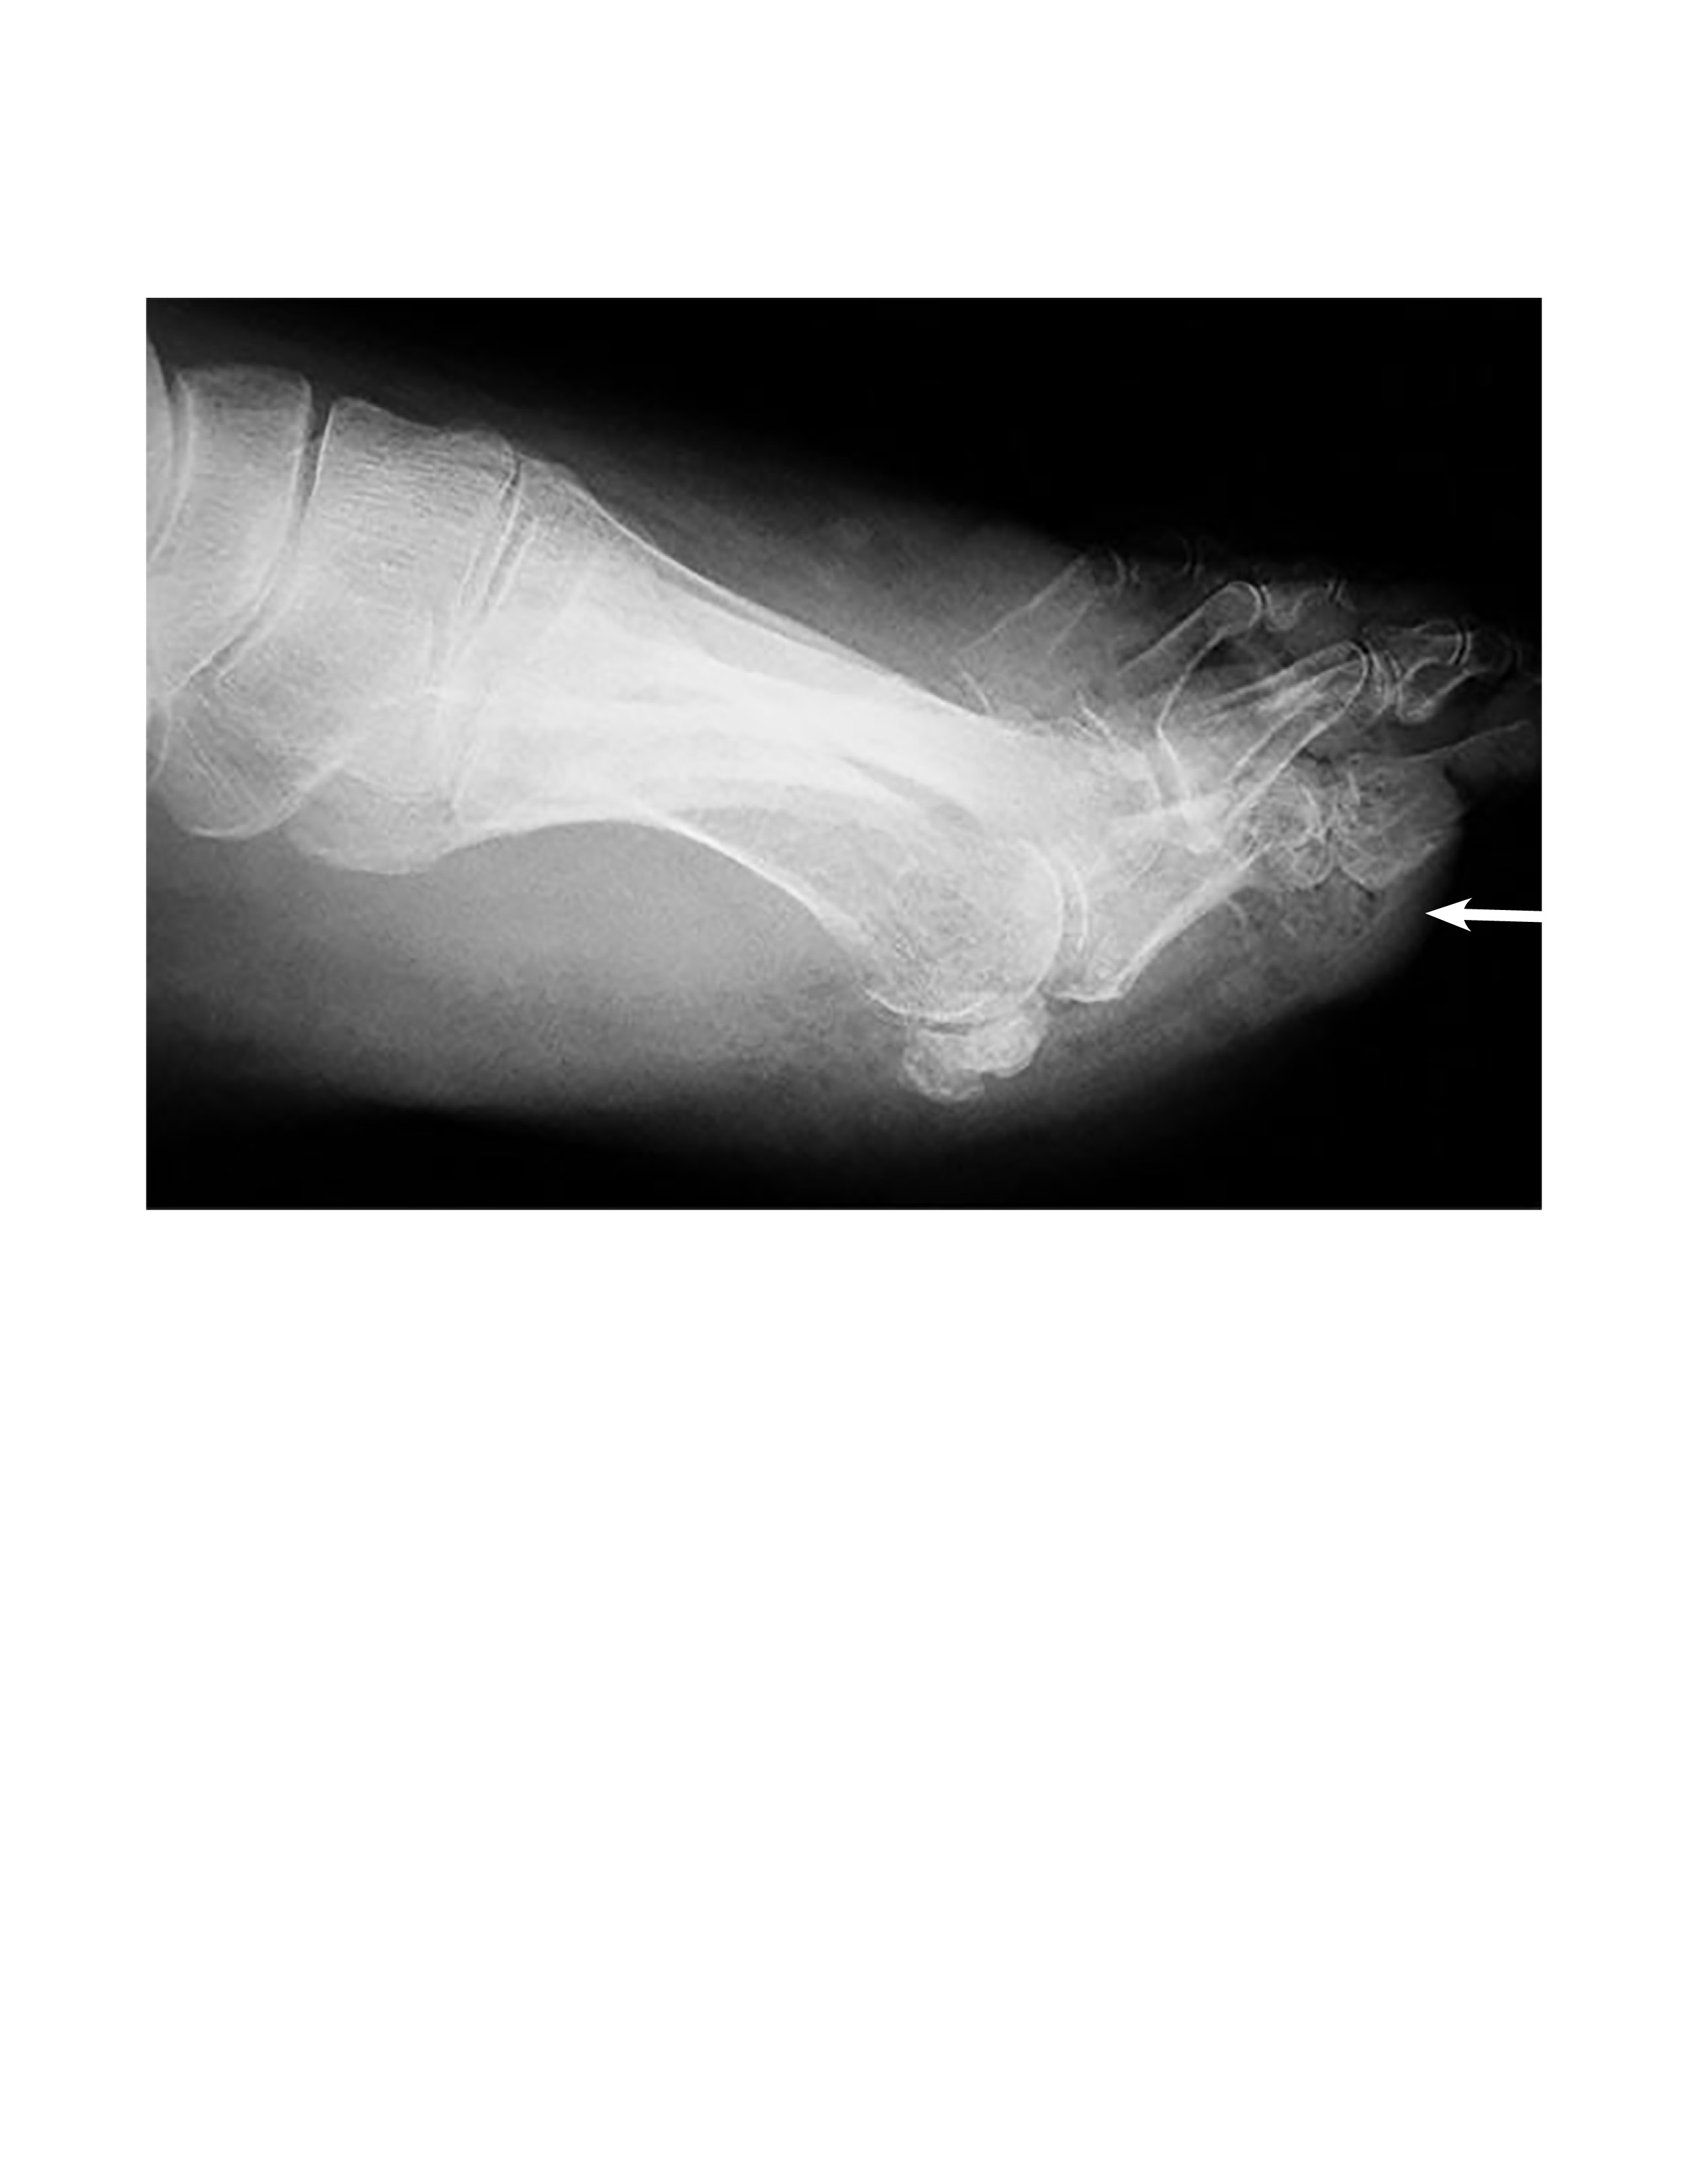 Radiograph of foot